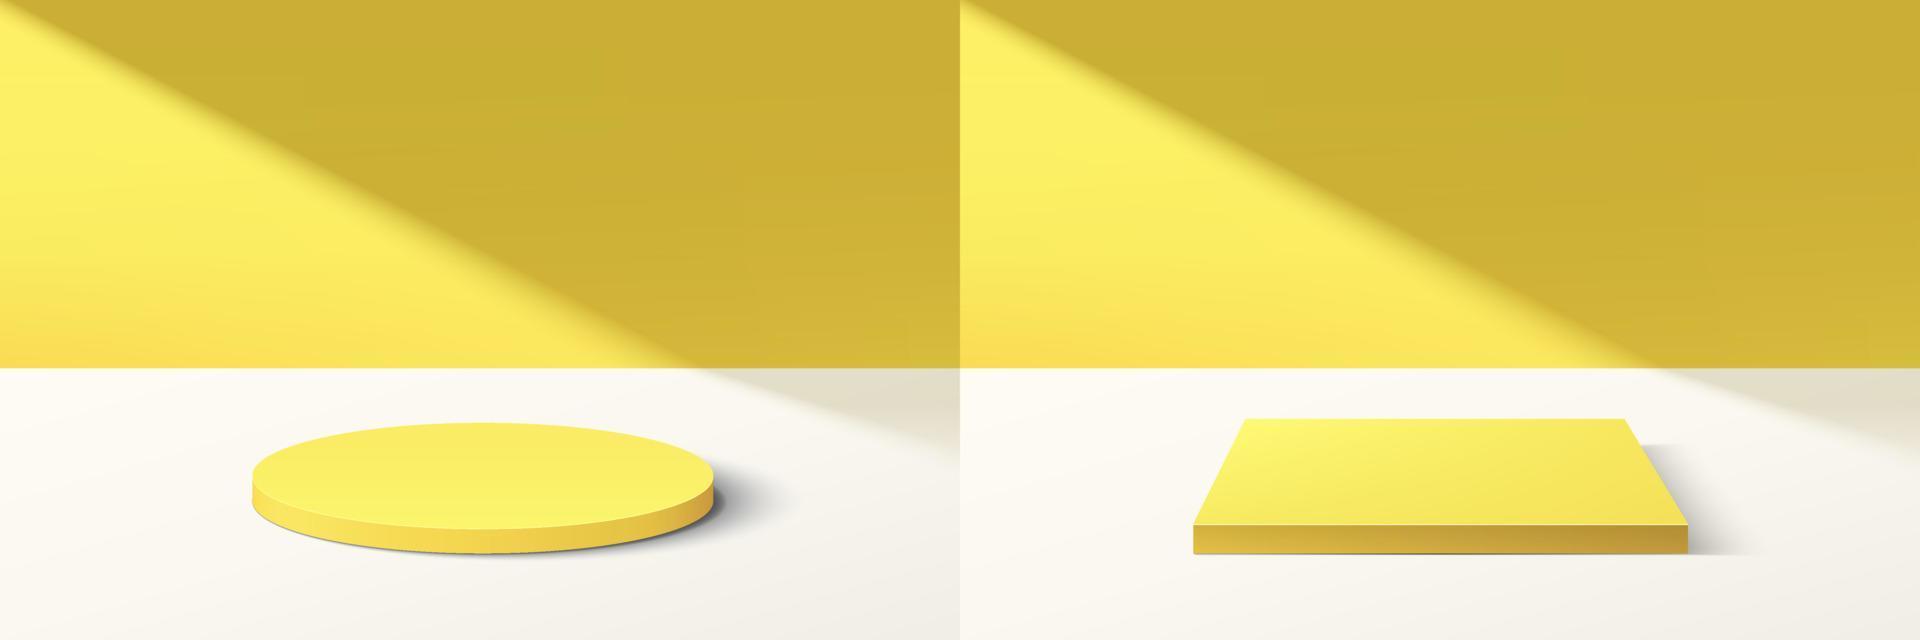 satz aus abstraktem 3d-gelbem zylinder und würfelsockelpodium mit hellgelber minimaler wandszene im schatten. sammlung von geometrischen plattformen zum rendern von vektoren für die präsentation von kosmetischen produkten